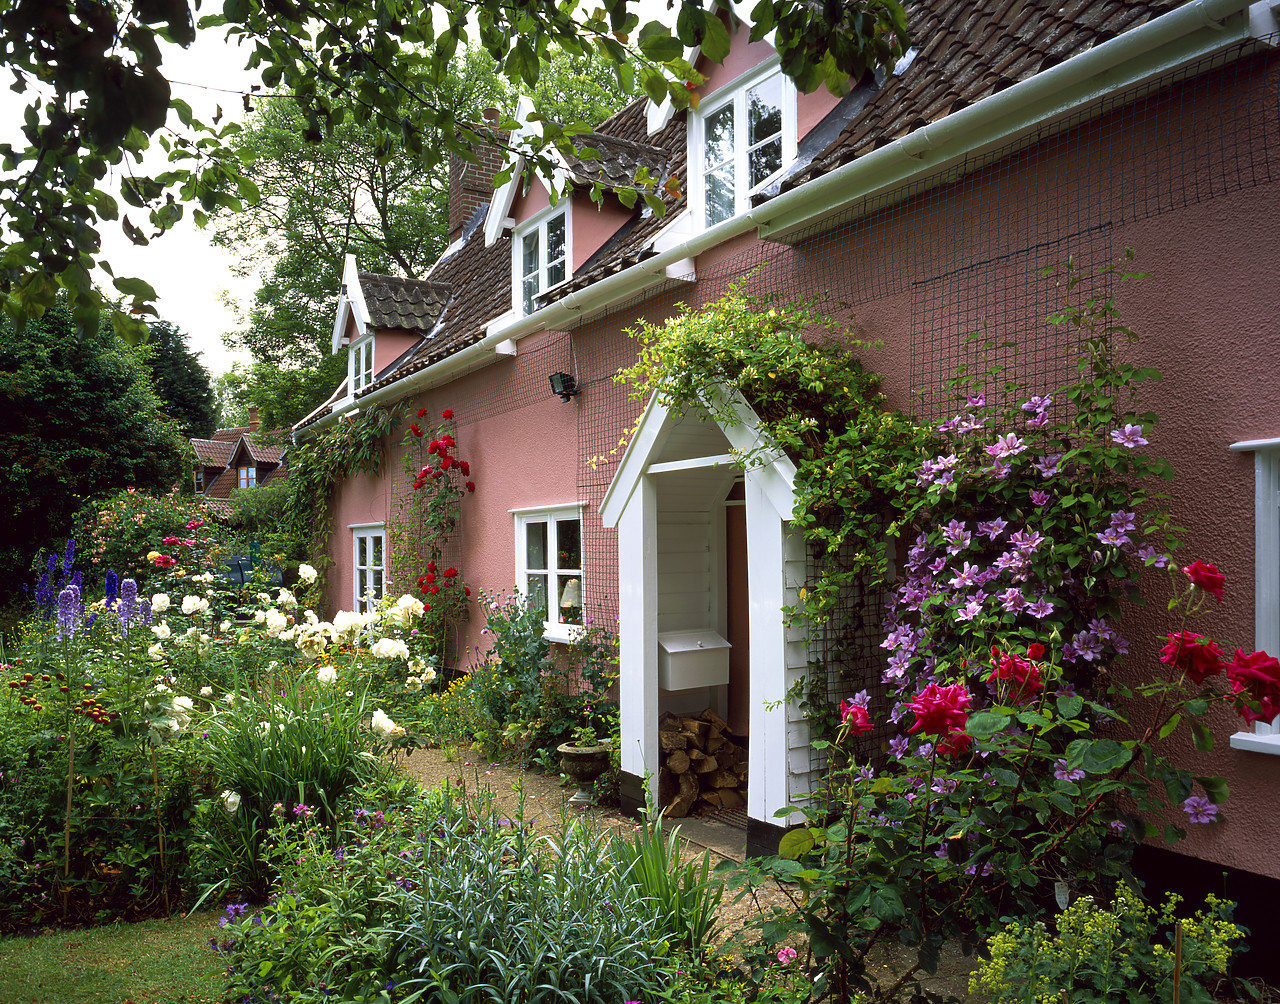 #040151-2 - Cottage & Garden, Topcroft, Norfolk, England